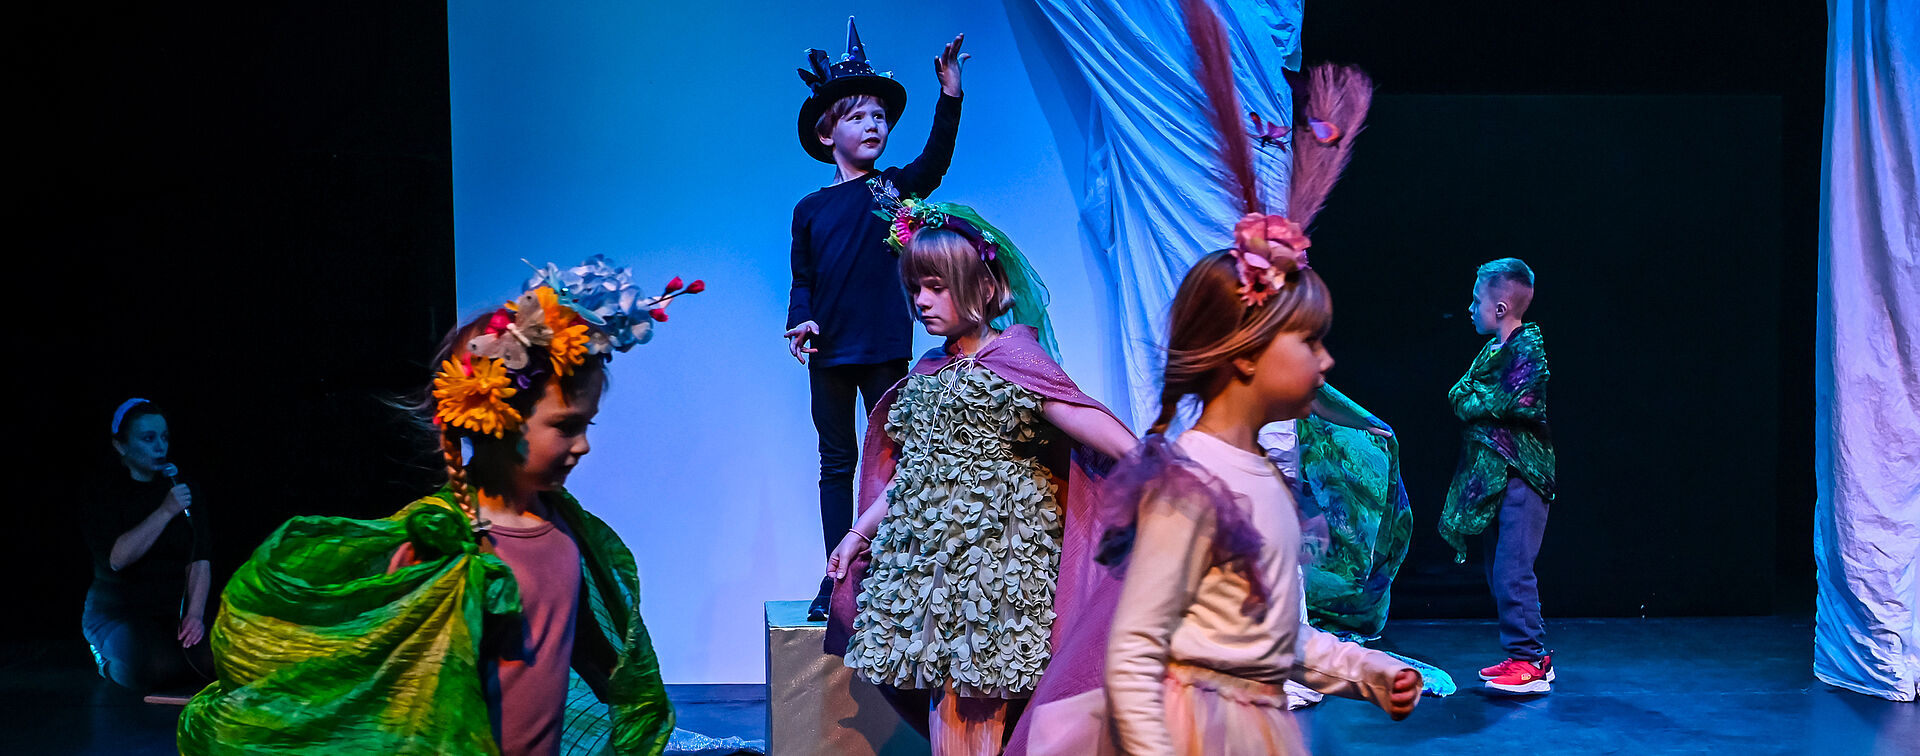 Kinder auf einer Bühne. Ein Mädchen steht mit einer Schneekugel im Vordergrund. Die Kinder dahinter hocken im Kreis oder auf goldenen Würfeln.